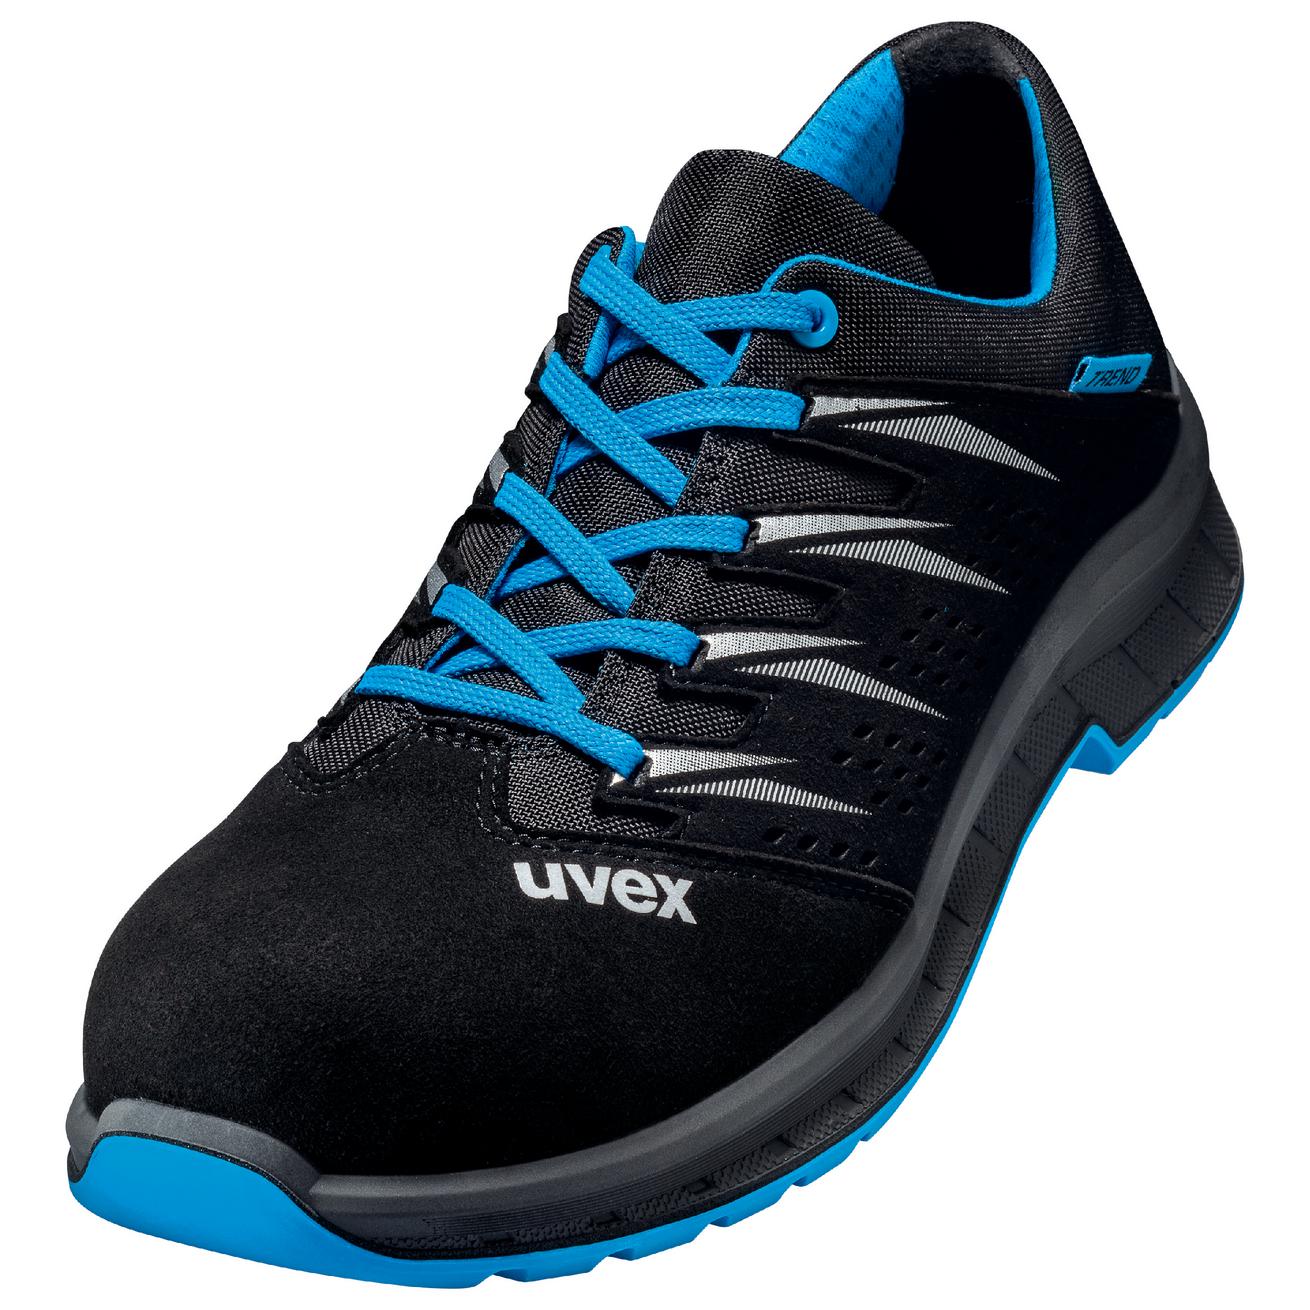 Perf. polobotka obuv uvex 2 trend, šíře 11, S1 SRC, černá/modrá 6937 Velikost: 42, Kód produktu: 6937842